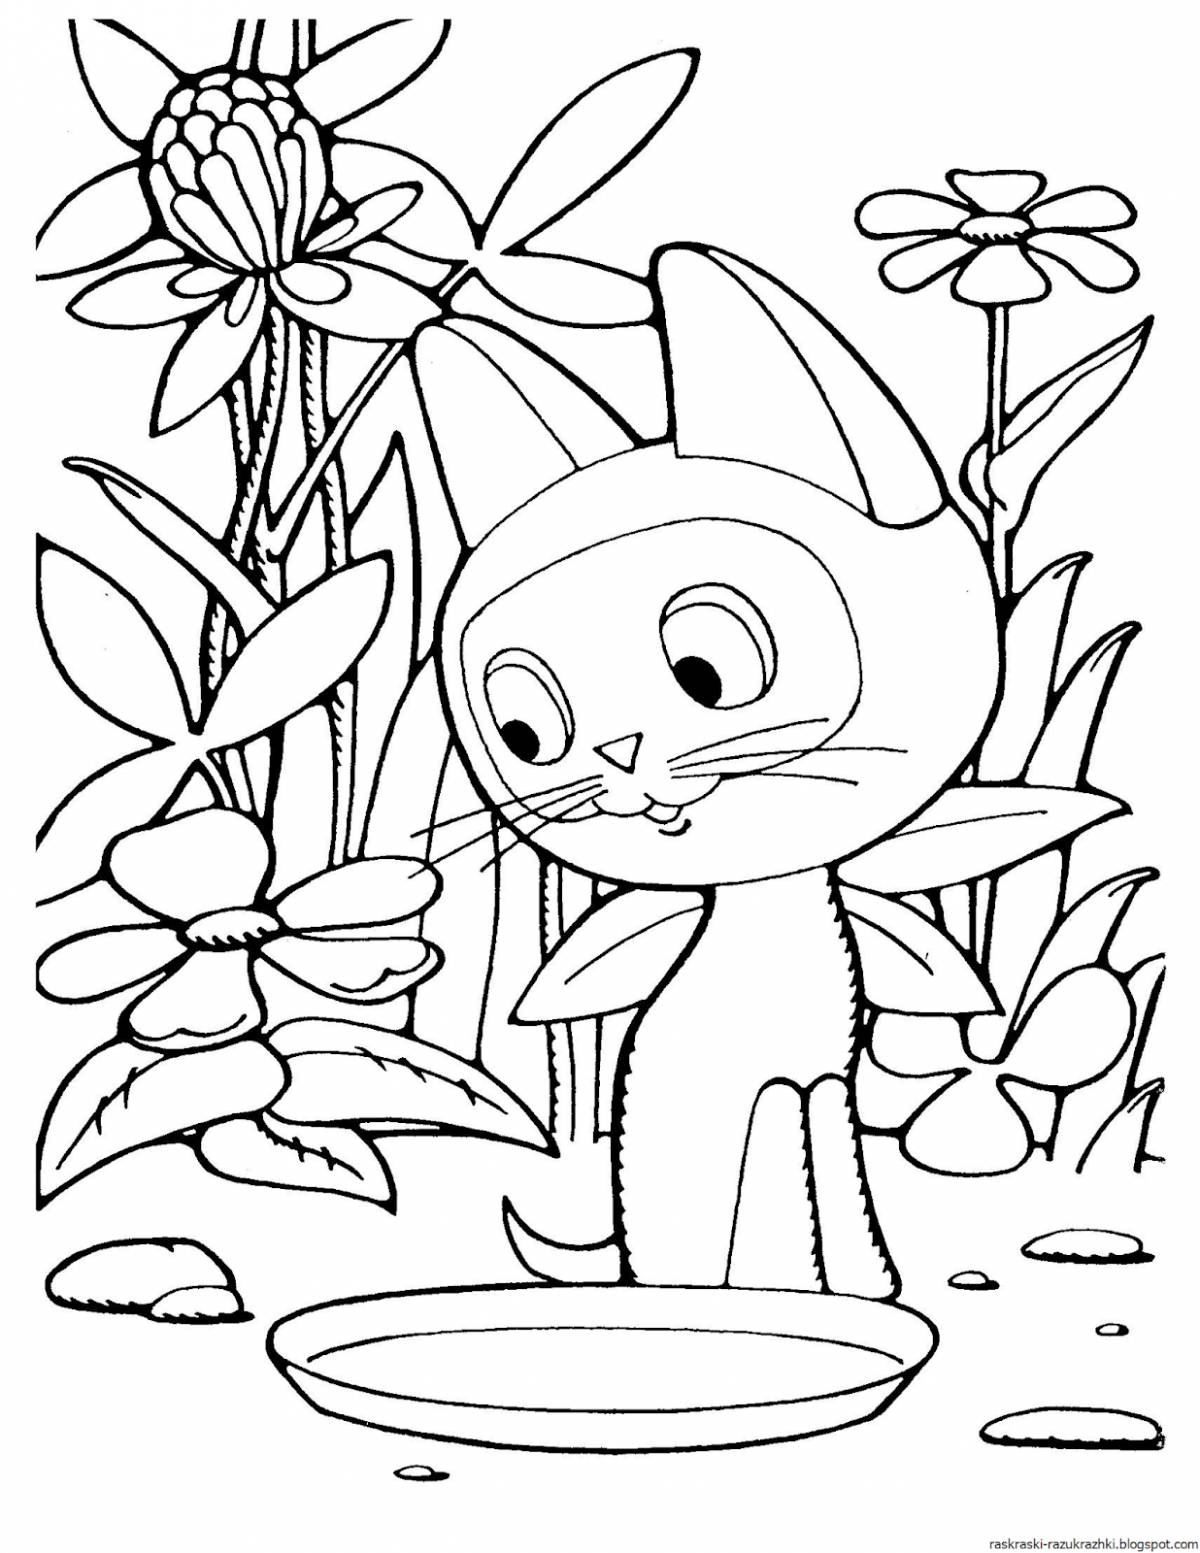 Joyful kitten coloring book